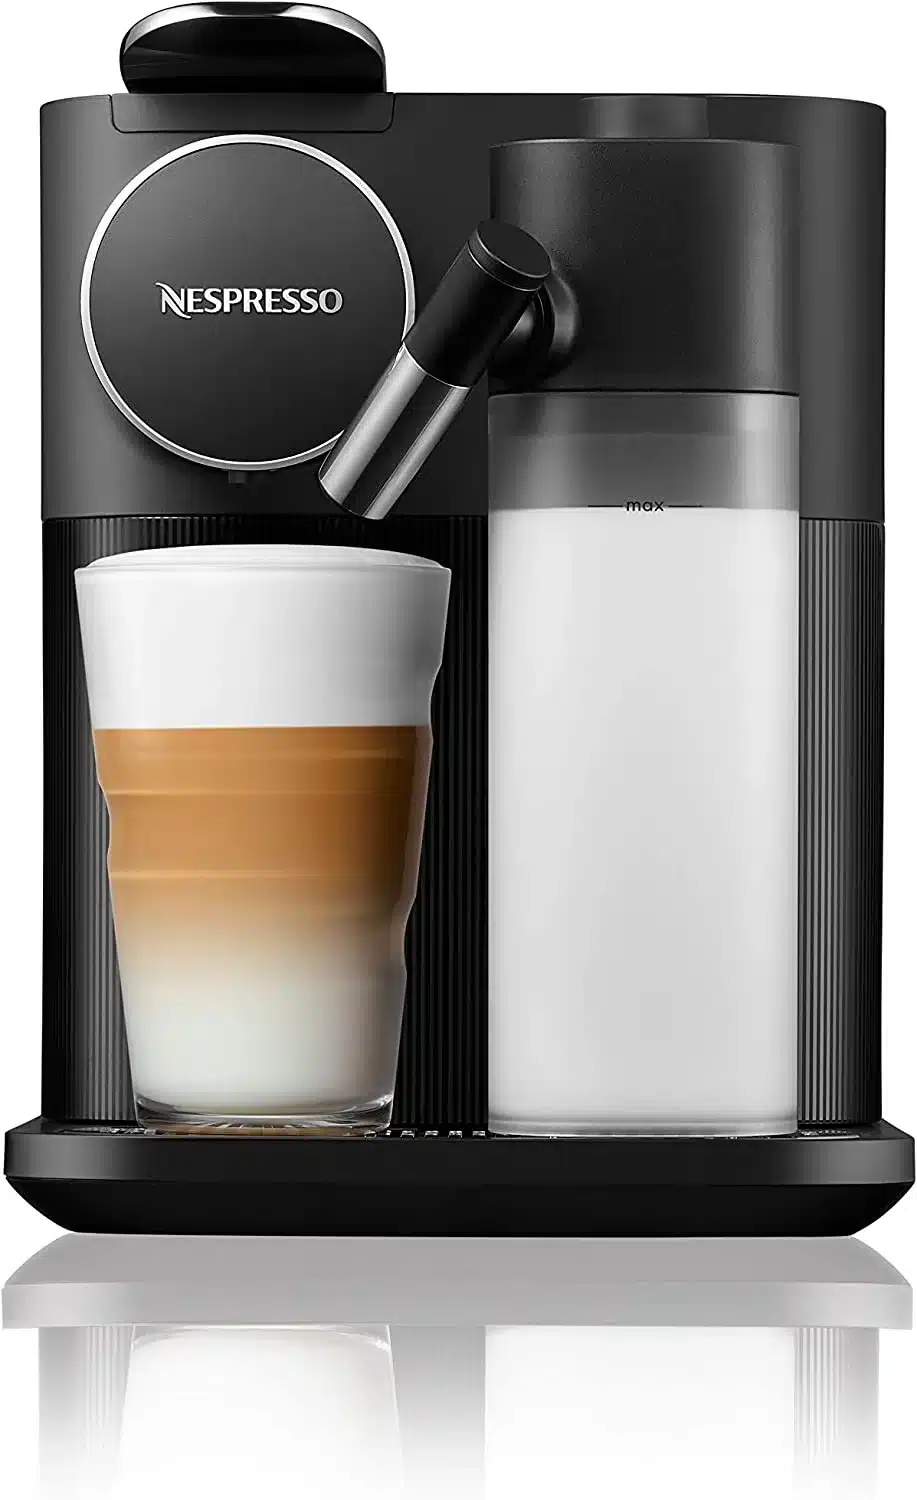 Nespresso Gran Lattissima Coffee and Espresso Machine